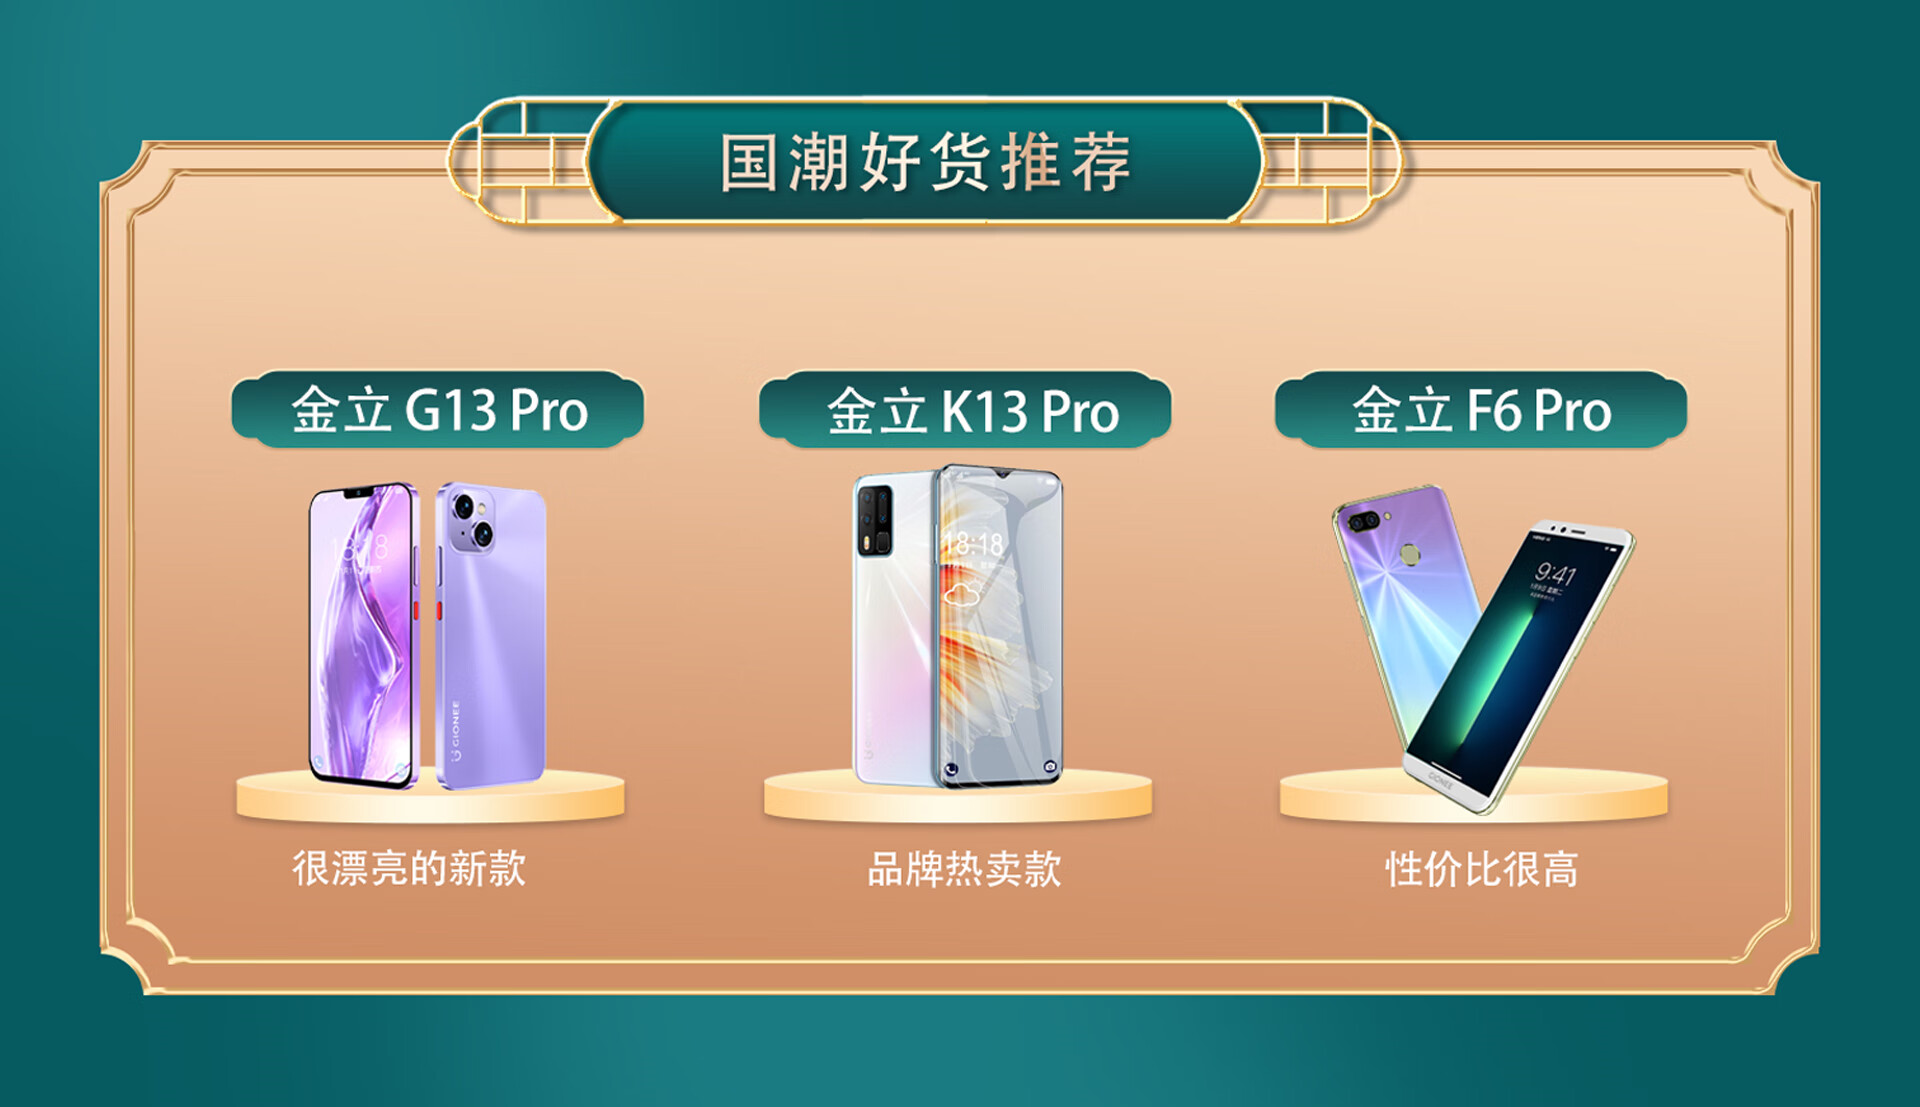 金立发布八款全面屏手机 全系列产品全面标配全面屏